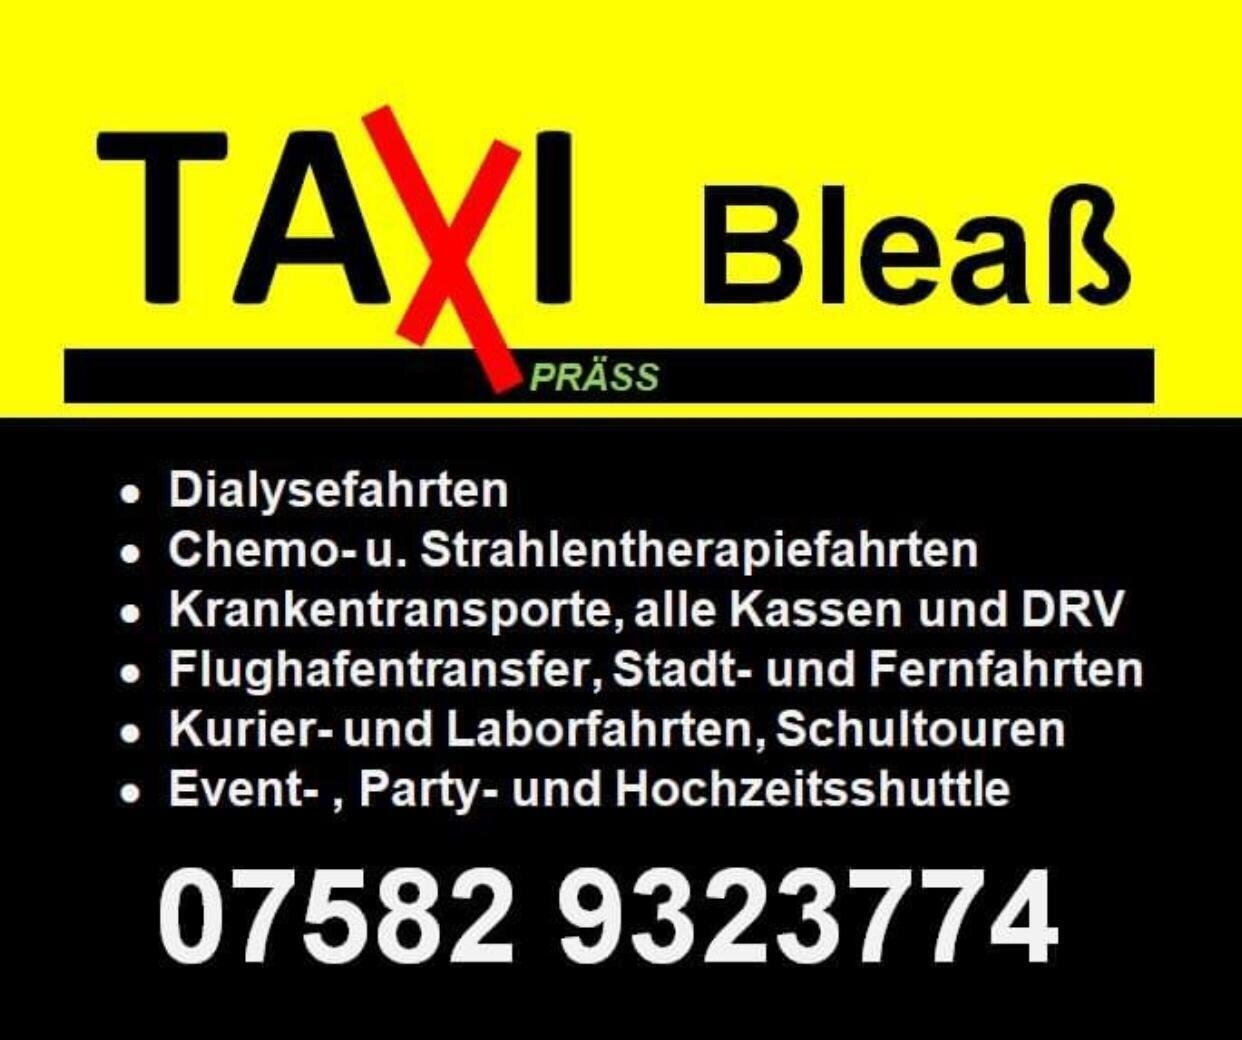 Taxi Bleaß